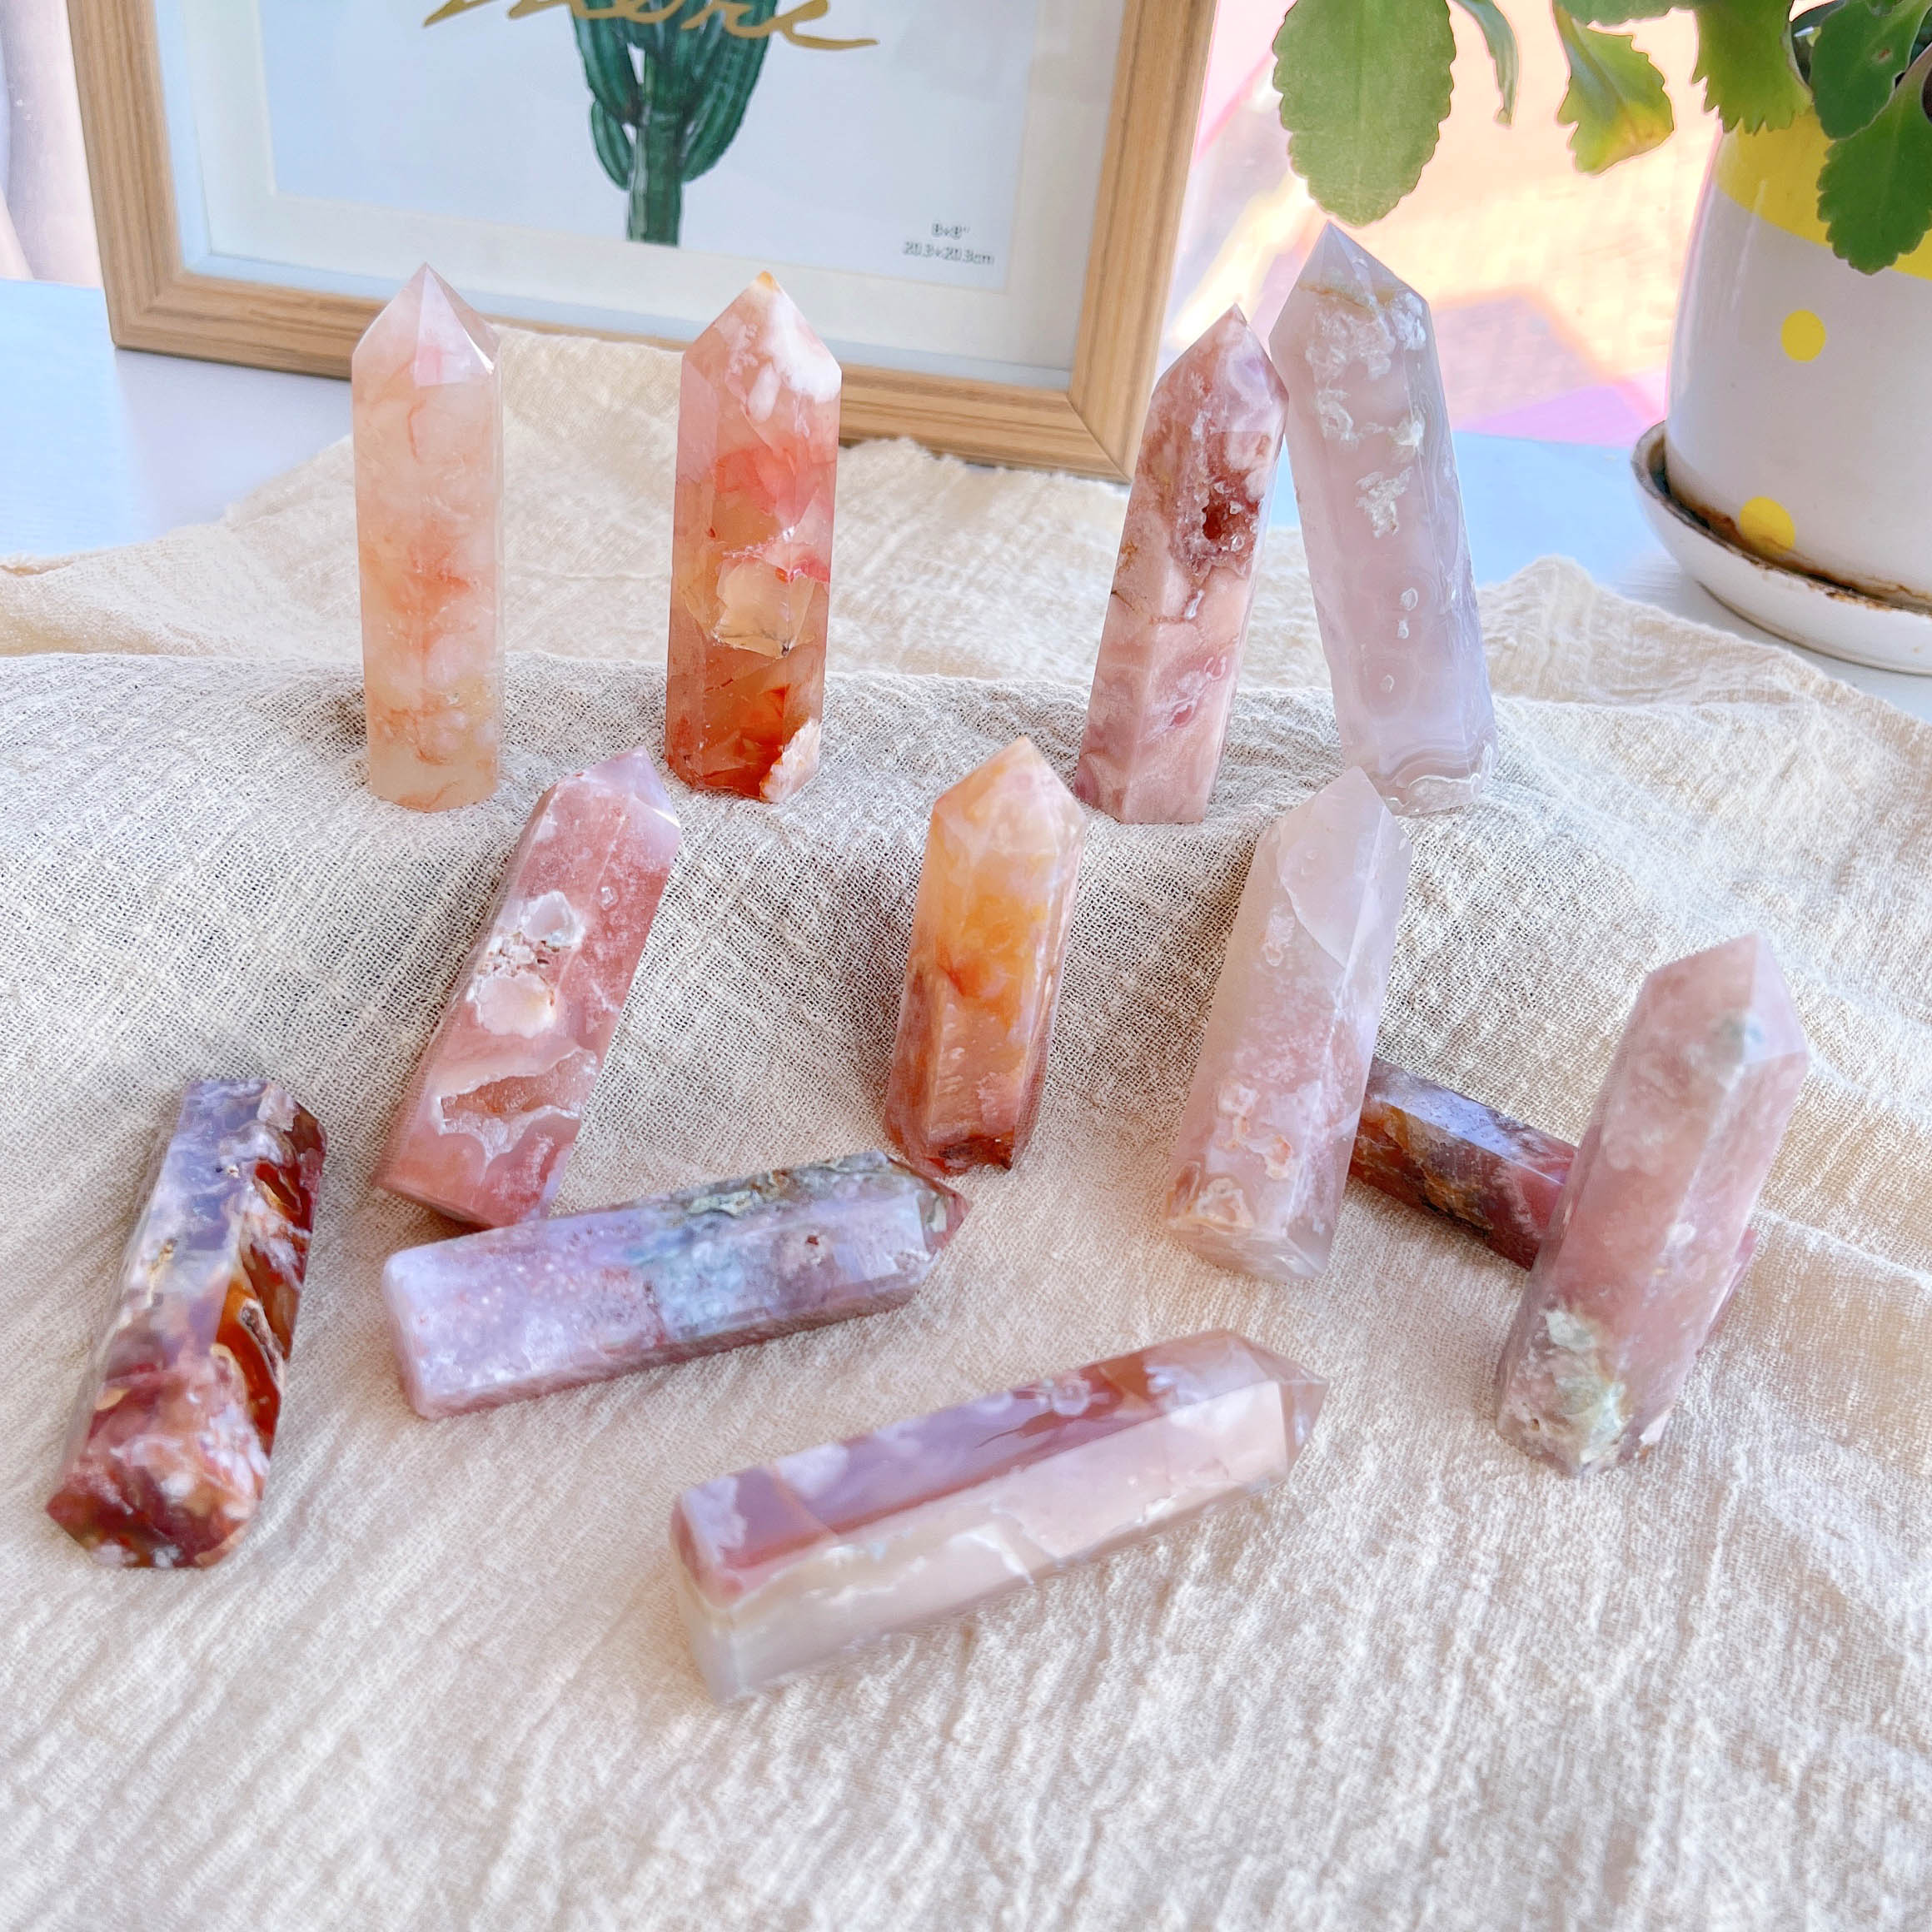 crystals healing stones spiritual awakening metaphysical higher self new age store